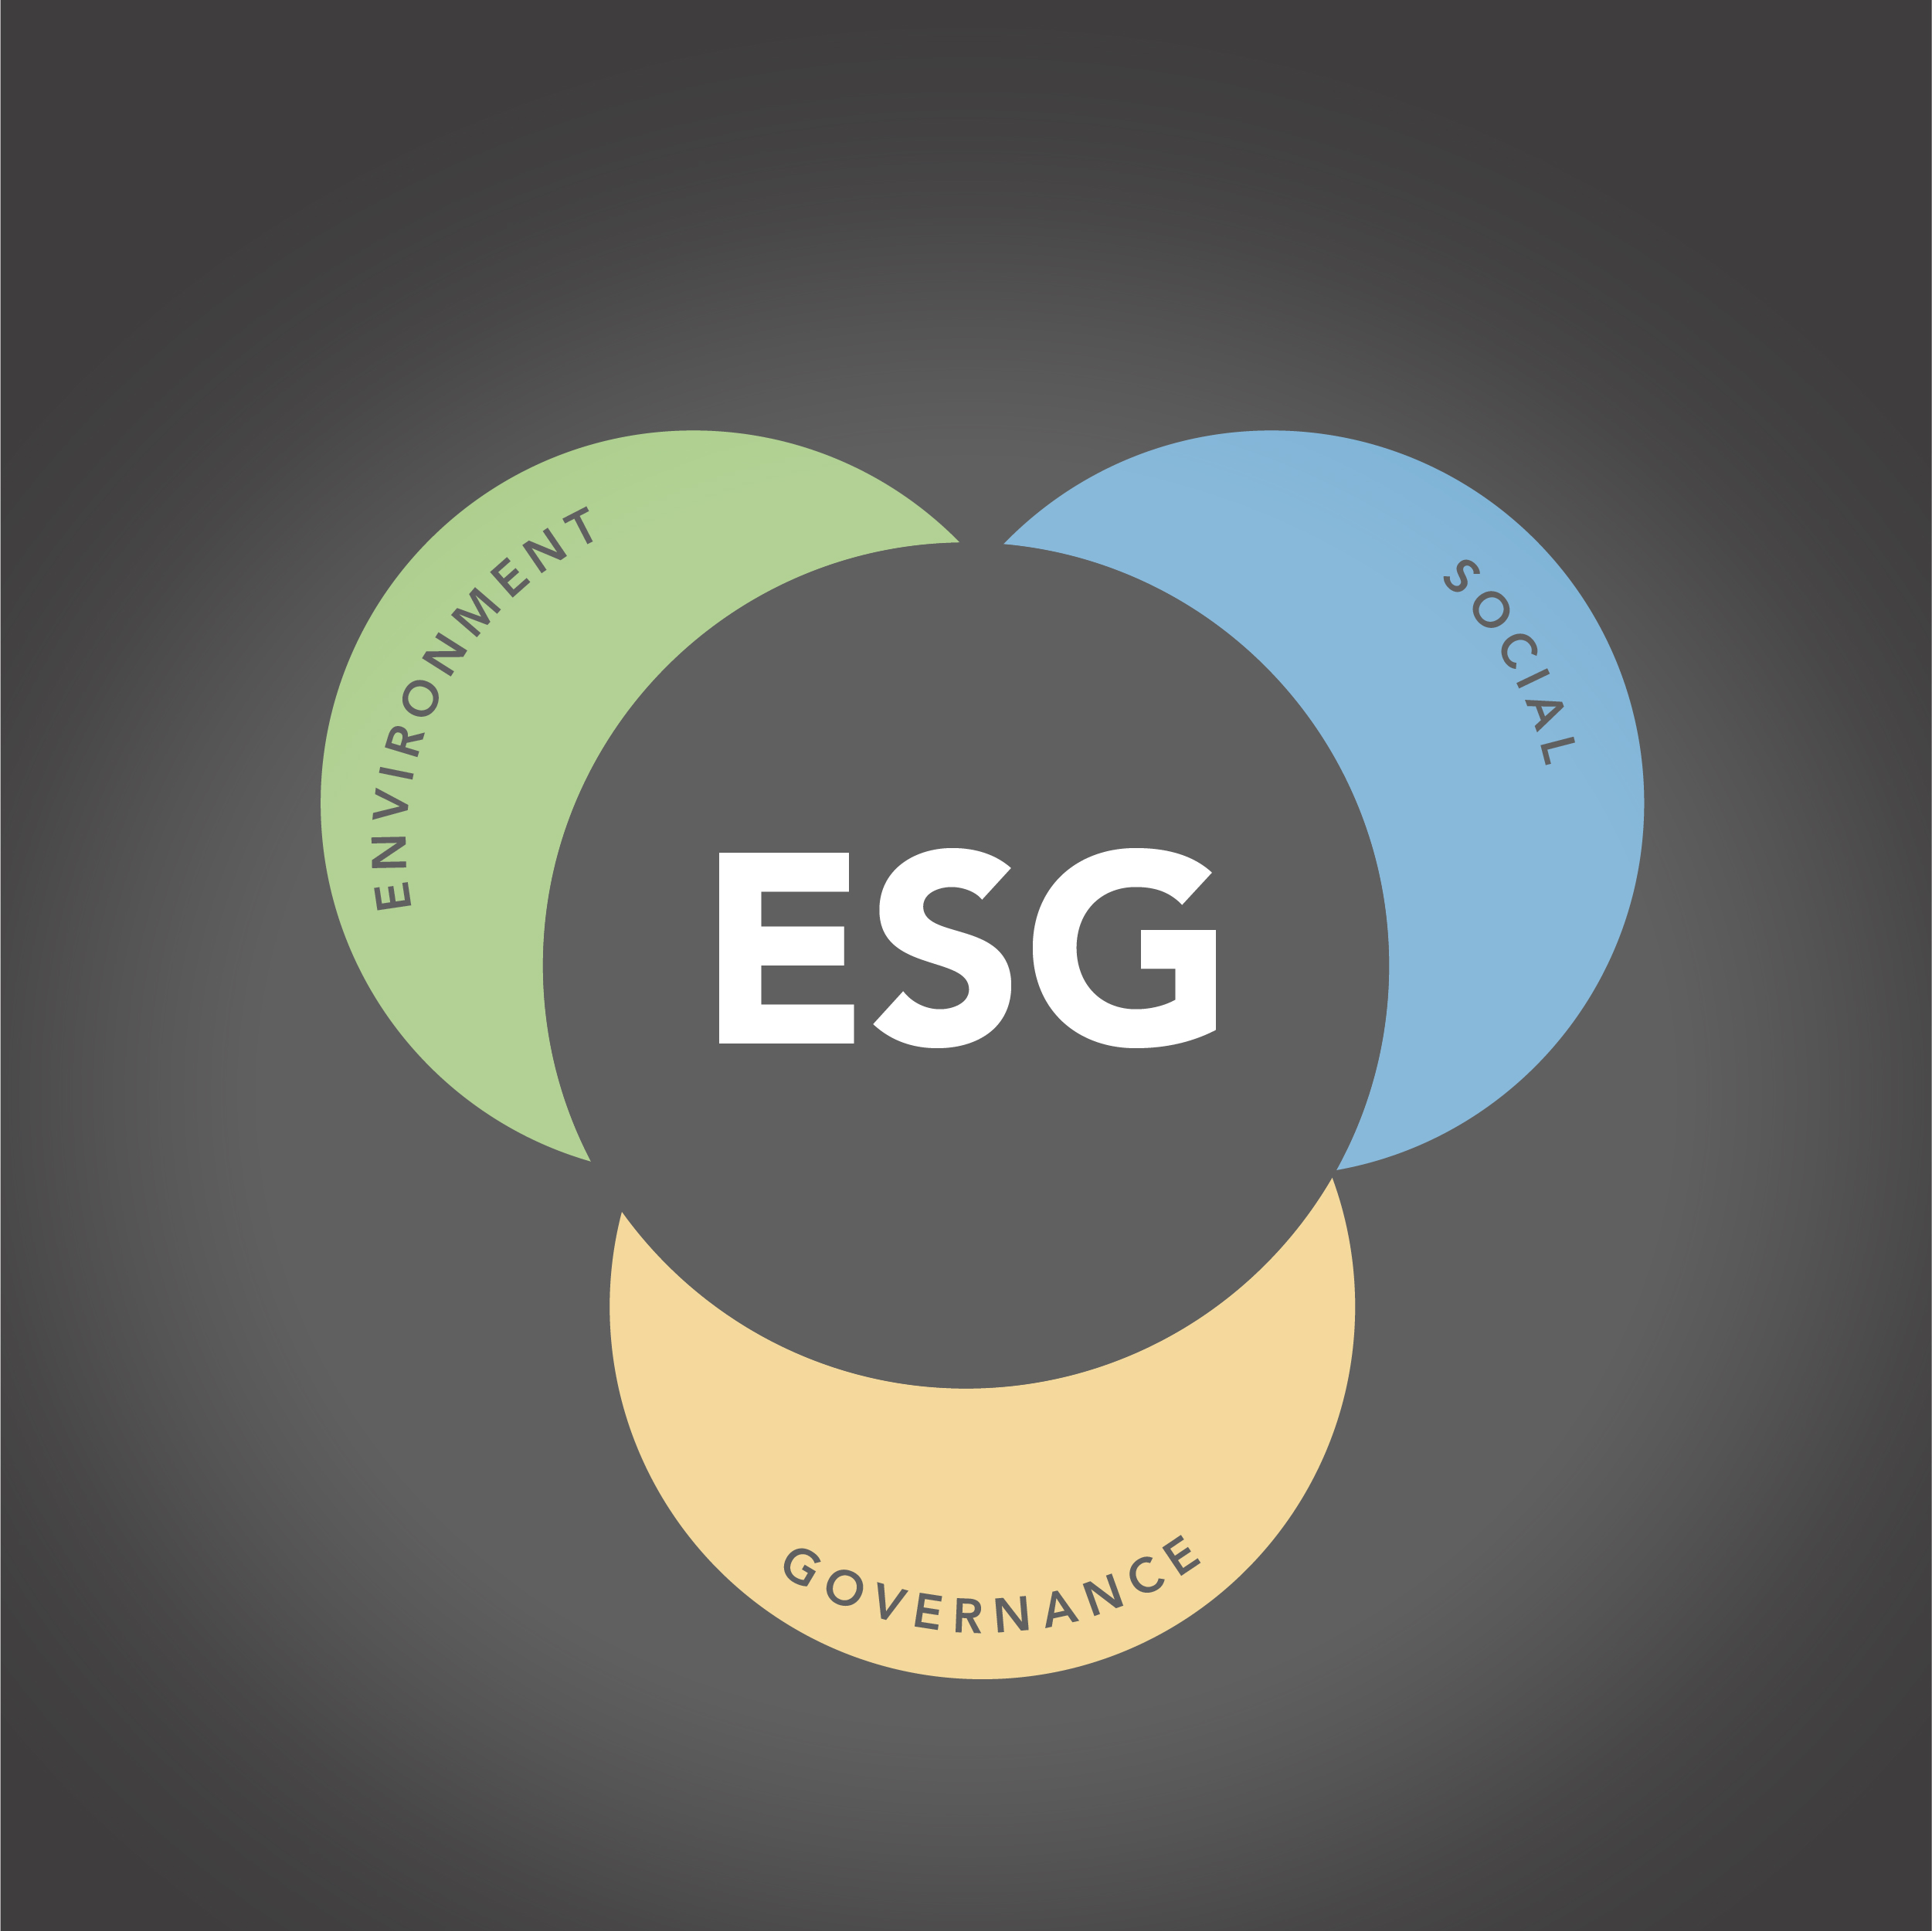 ESG in circles Environment, Social, Governance